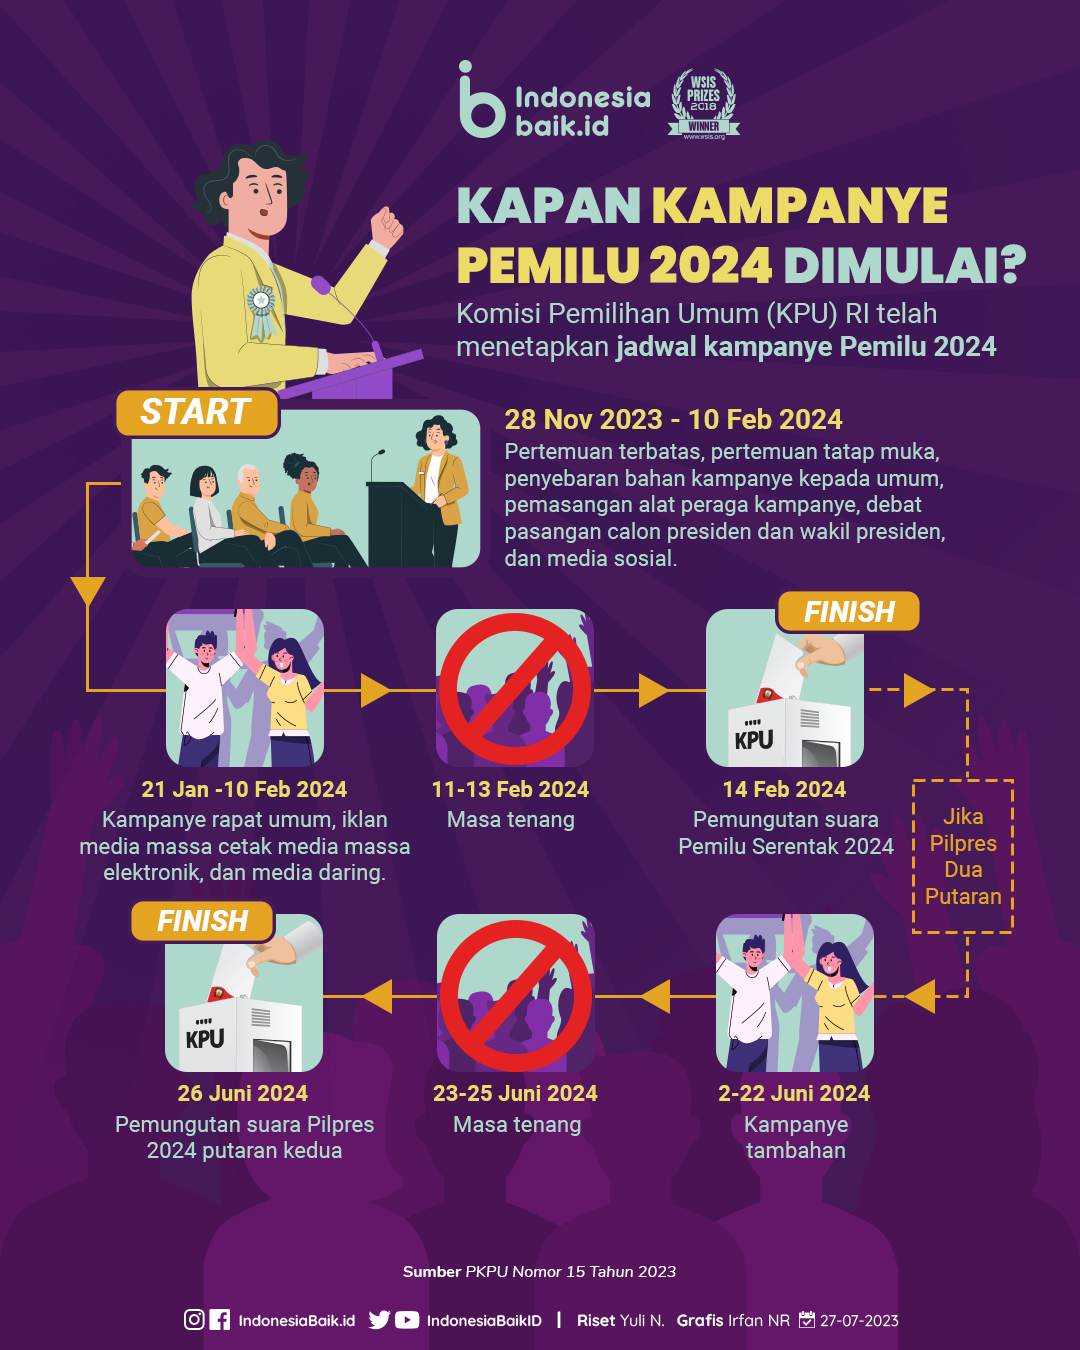 Kapan Kampanye Pemilu 2024 Dimulai? Indonesia Baik